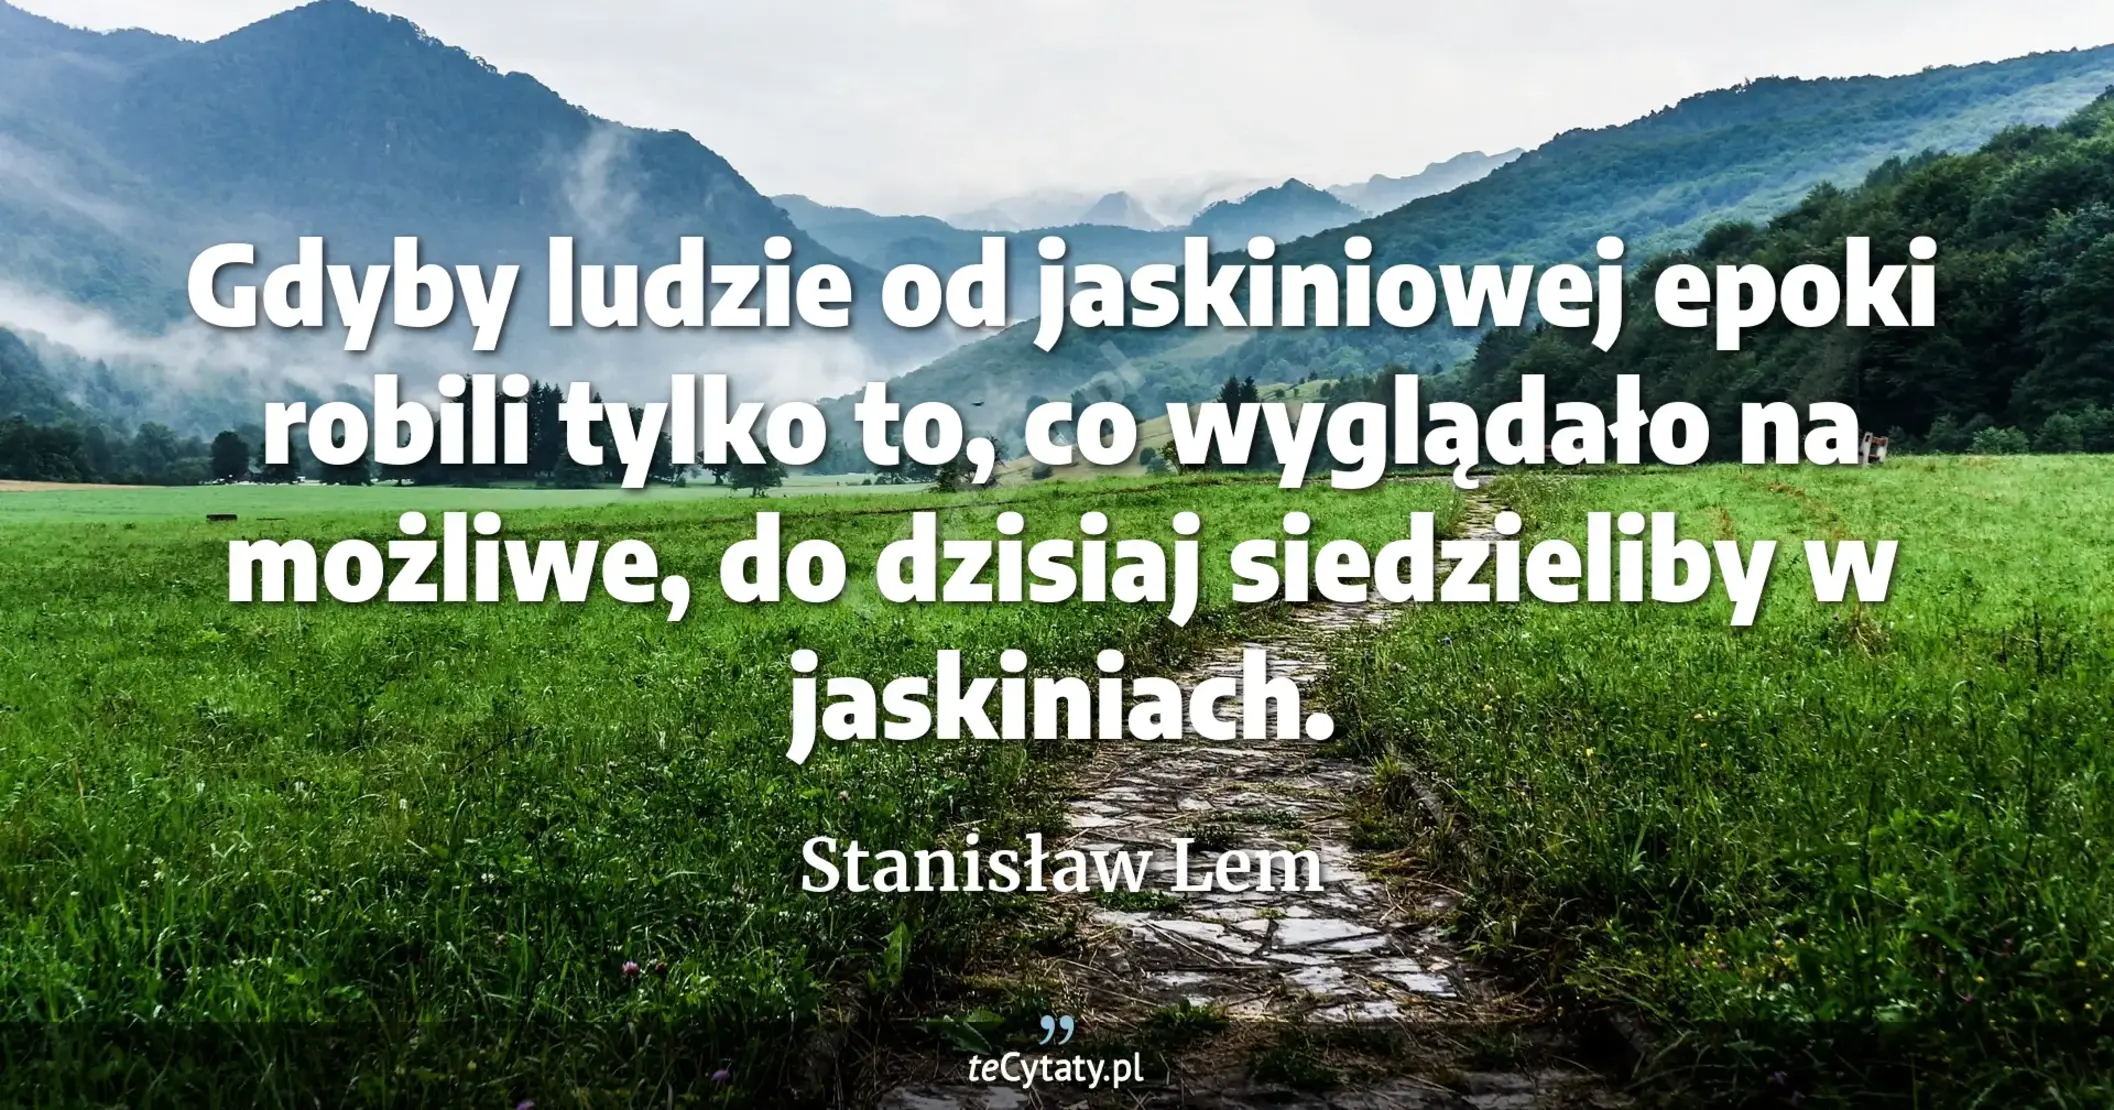 Gdyby ludzie od jaskiniowej epoki robili tylko to, co wyglądało na możliwe, do dzisiaj siedzieliby w jaskiniach. - Stanisław Lem